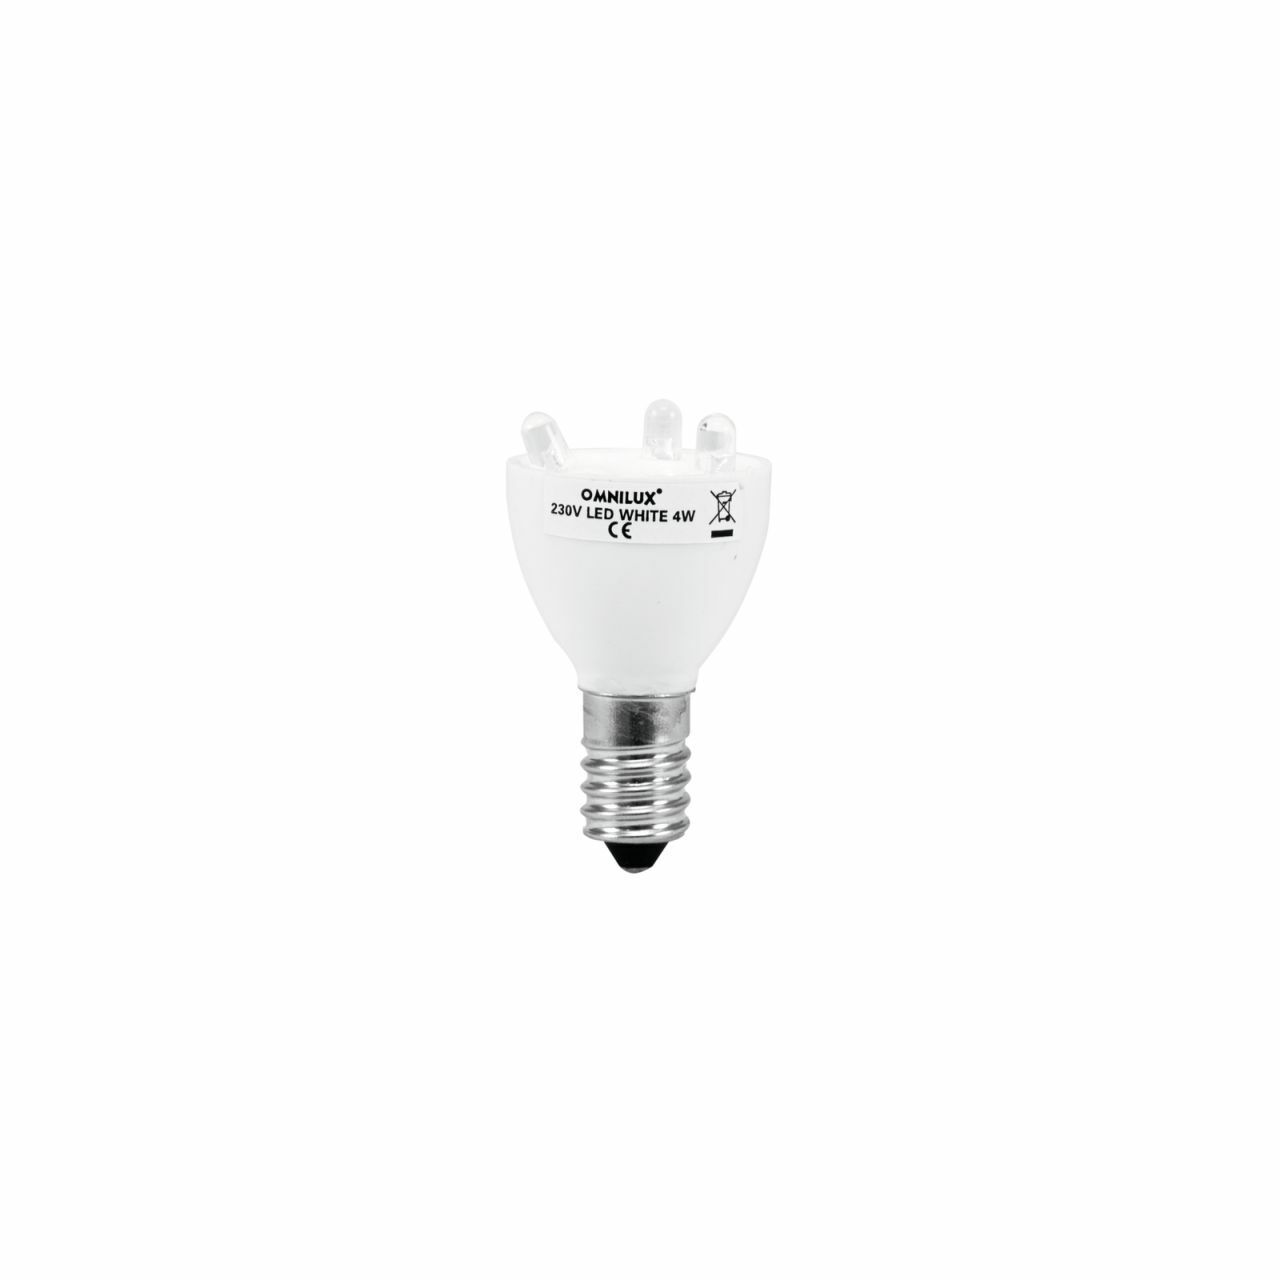 Omnilux Led Lamp 230v E14 3 Diodes White